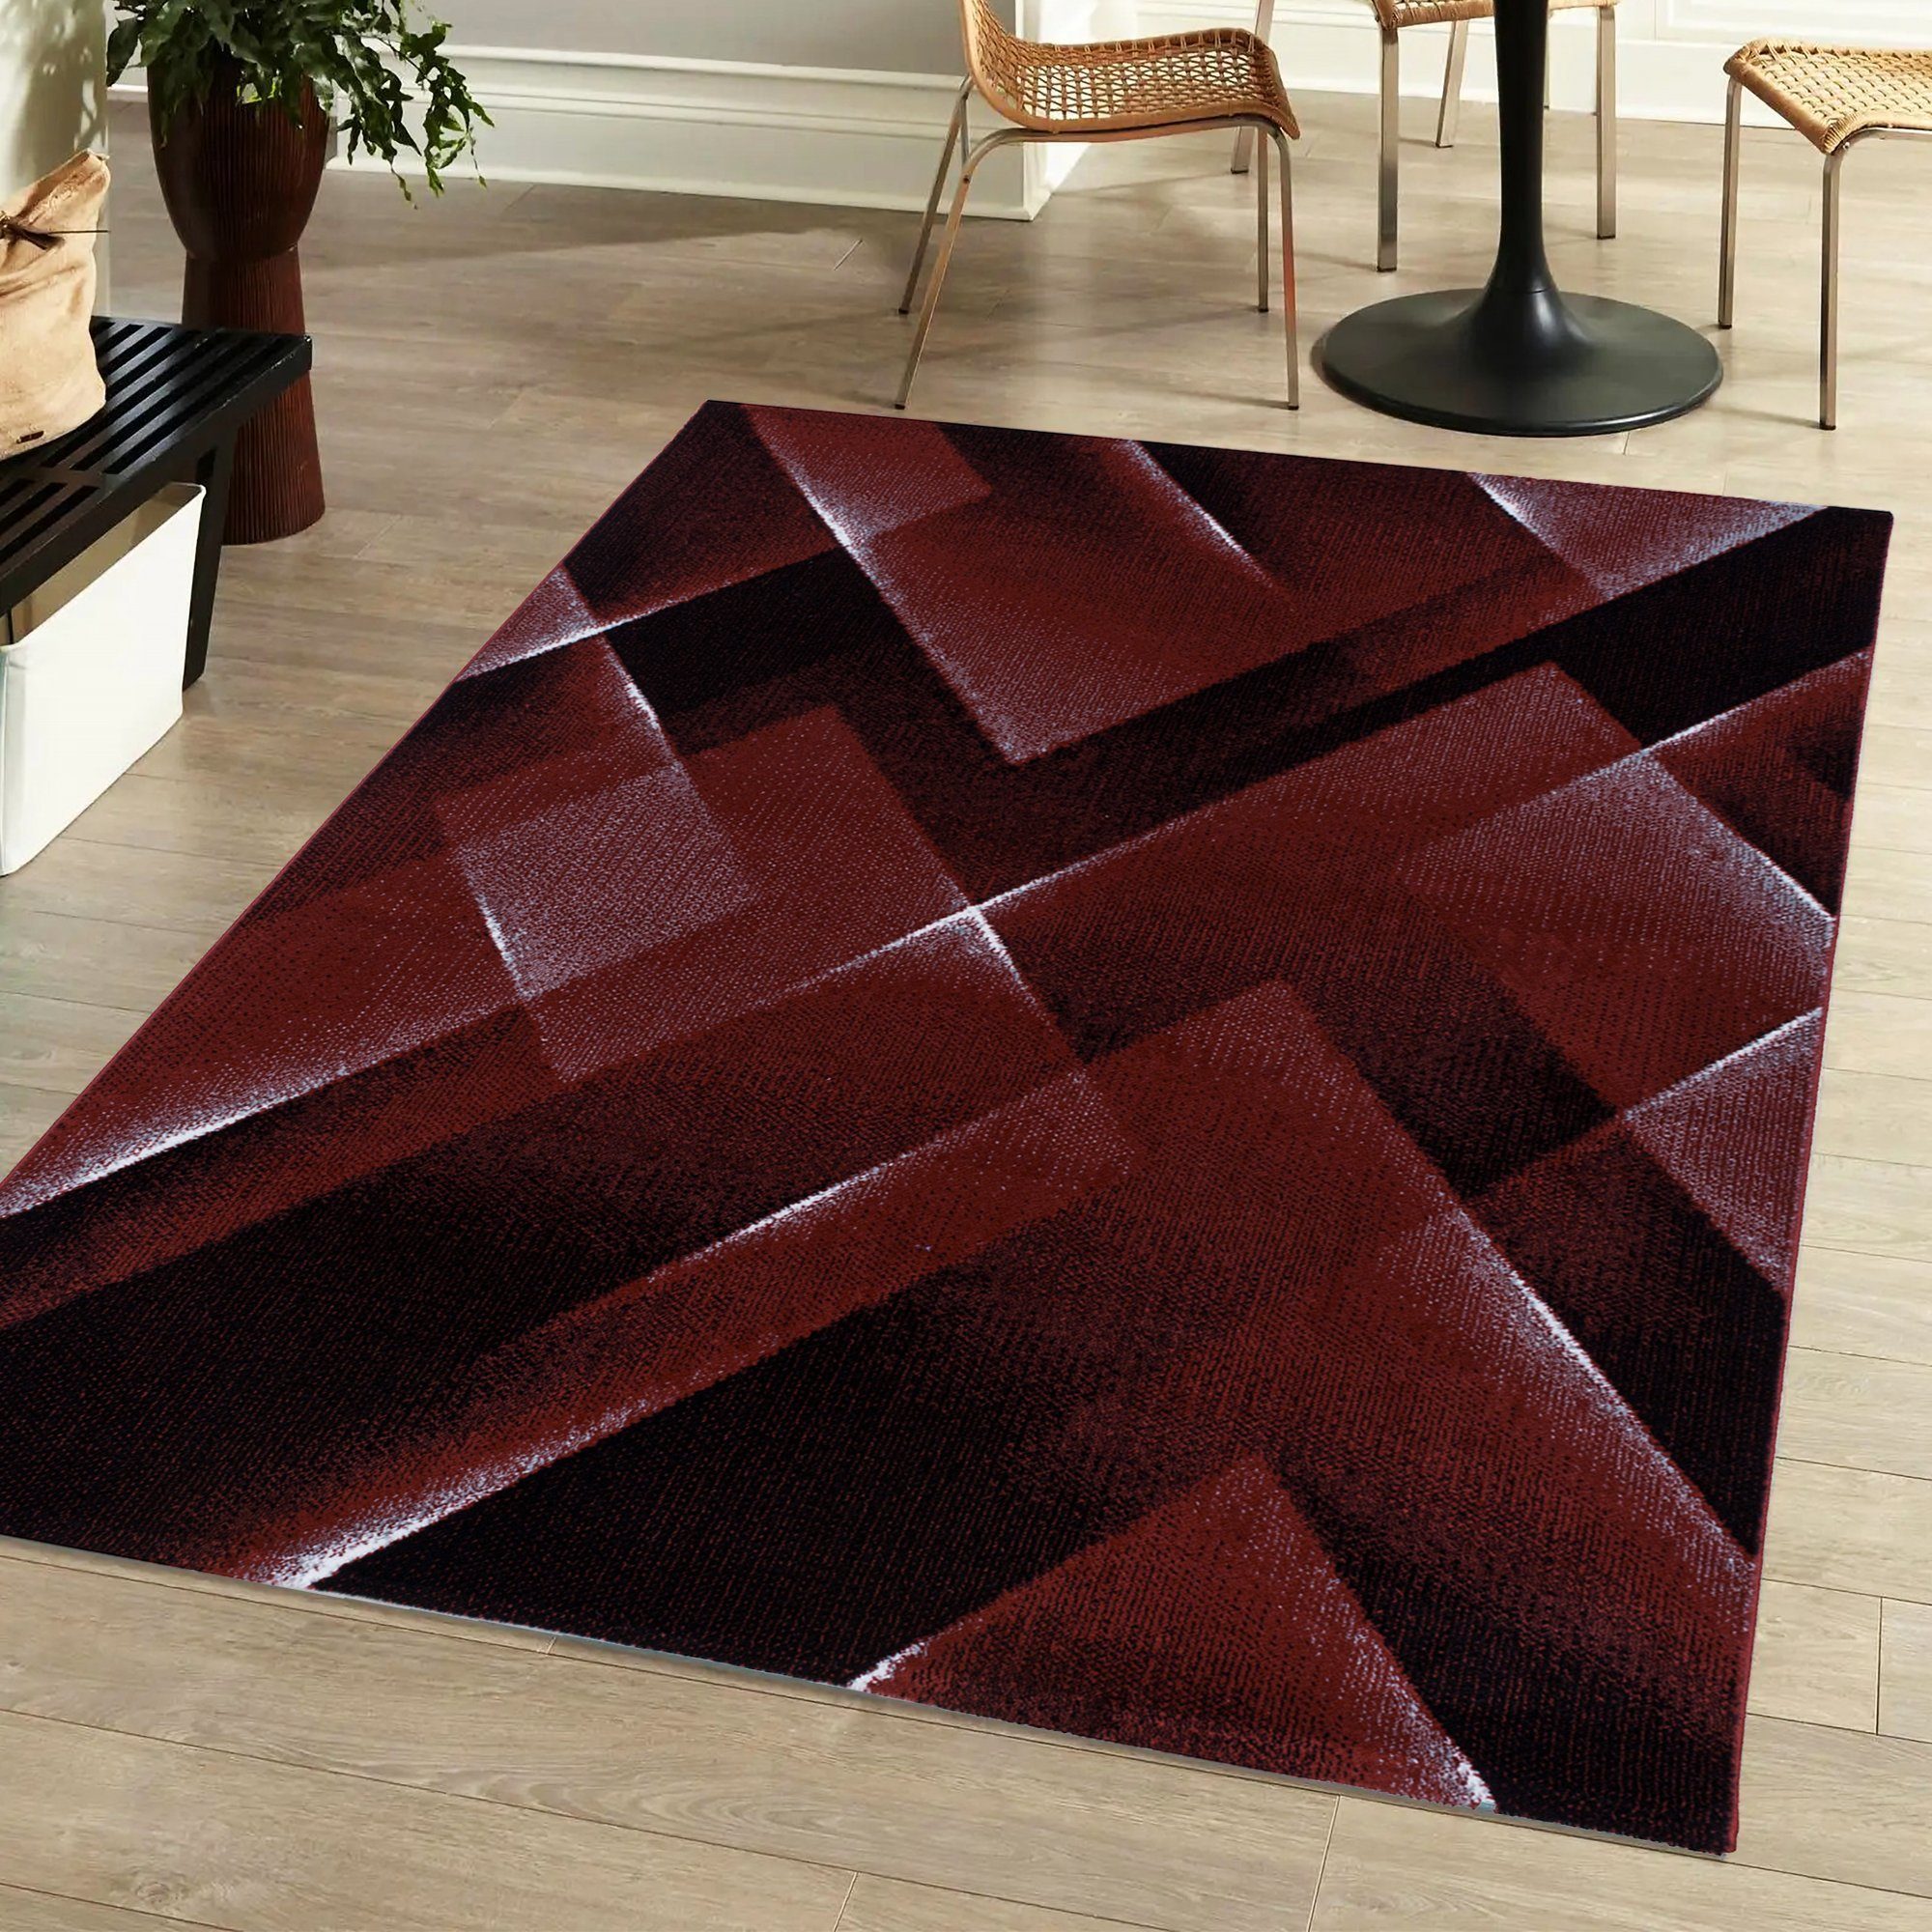 Designteppich Flachflorteppich 3D-Optik Wohnzimmer Schlafzimmer Kurzflorteppich, Miovani Rot